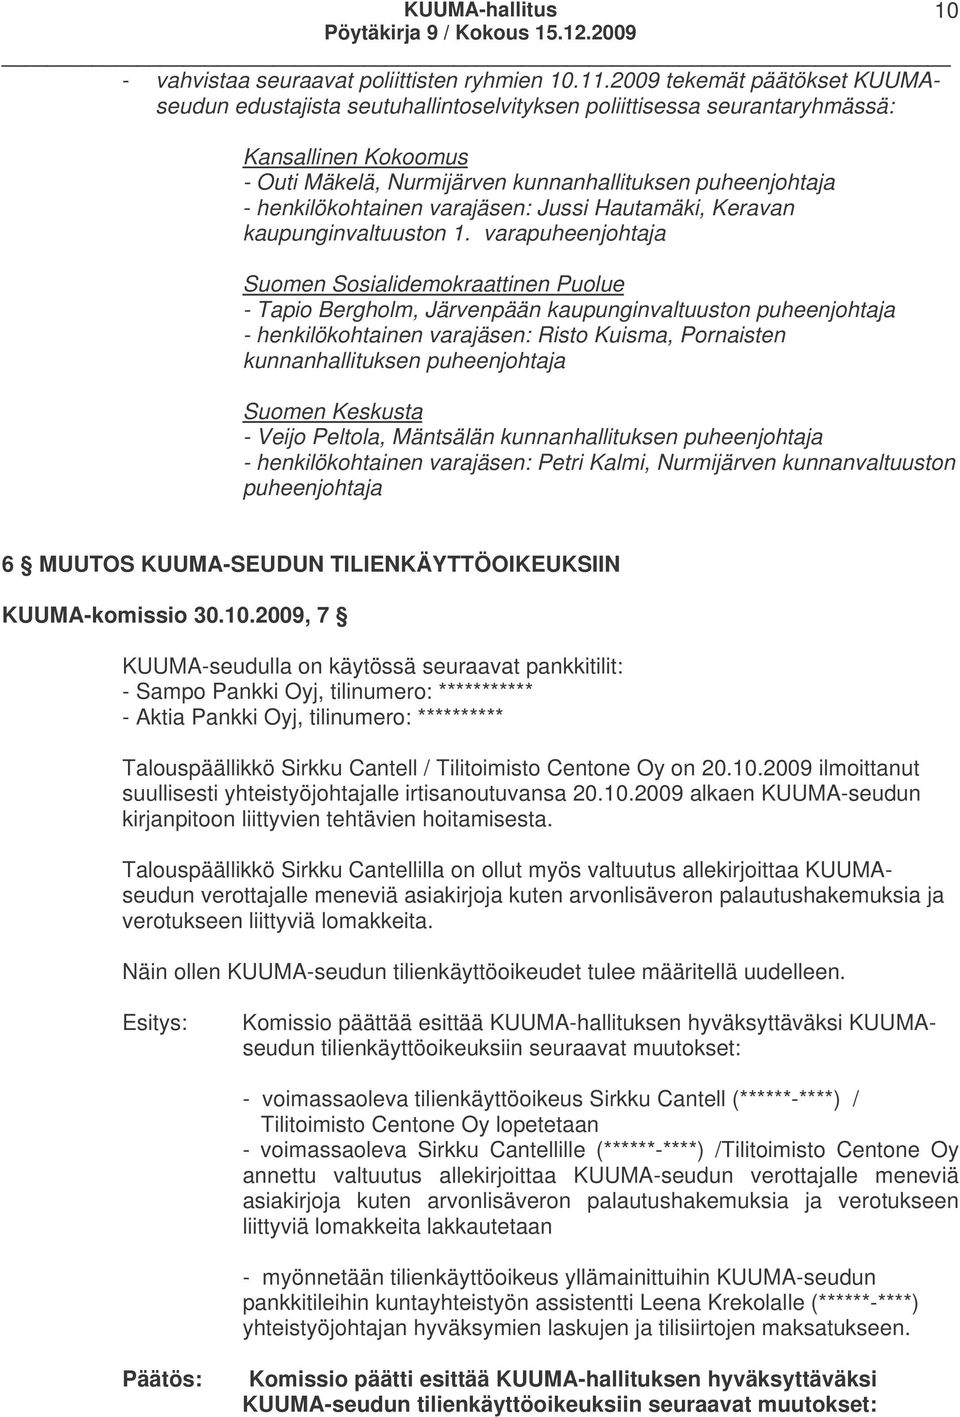 henkilökohtainen varajäsen: Jussi Hautamäki, Keravan kaupunginvaltuuston 1.